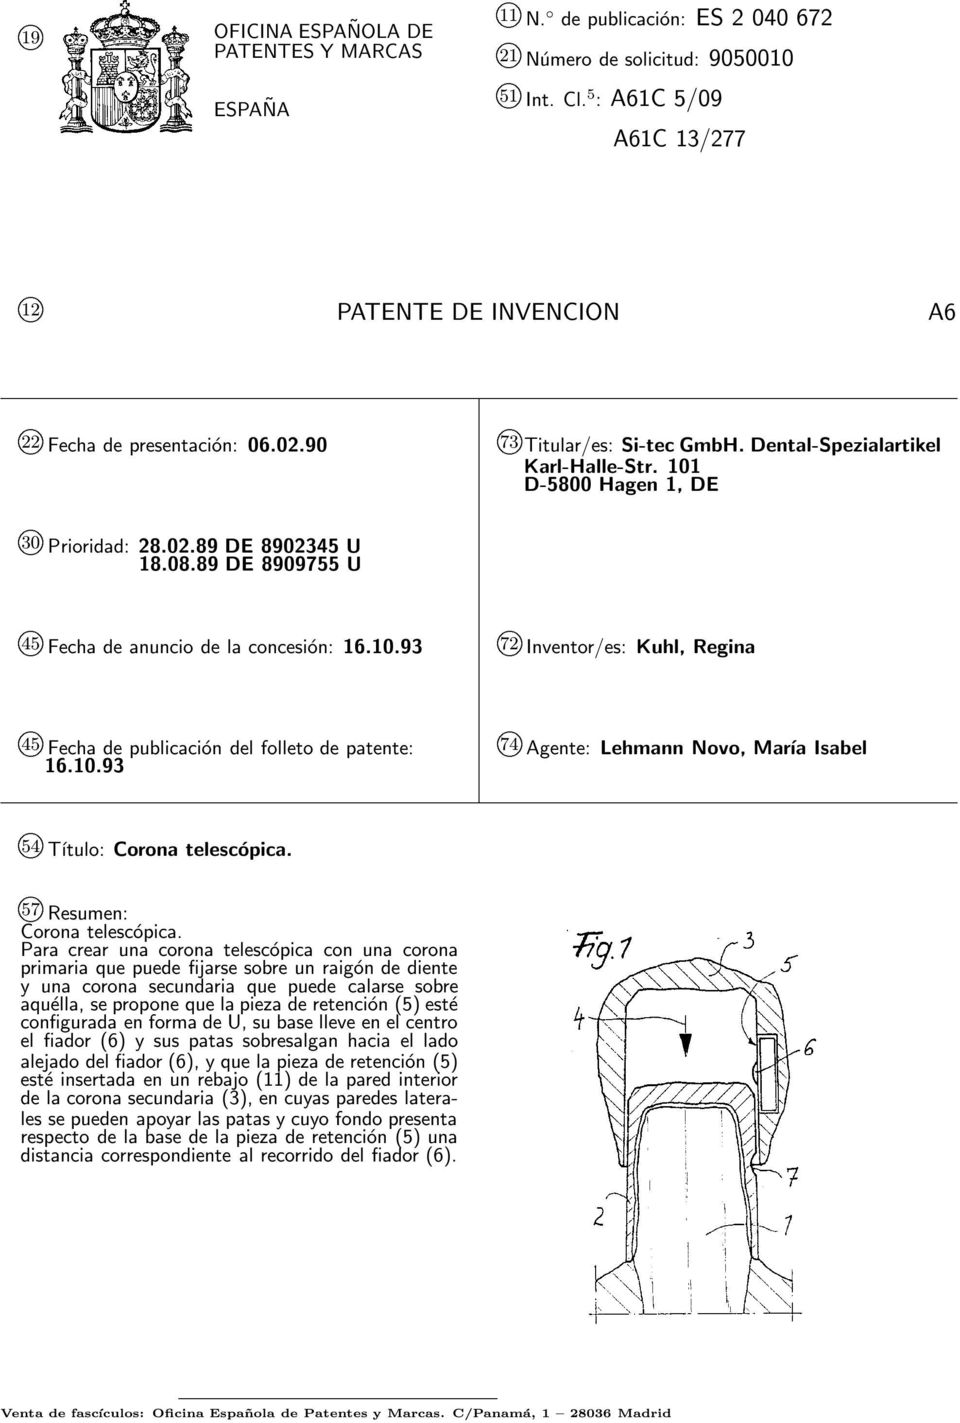 08.89 DE 89097 U 4 kfecha de anuncio de la concesión: 16..93 72 k Inventor/es: Kuhl, Regina k 4 Fecha de publicación del folleto de patente: 16.